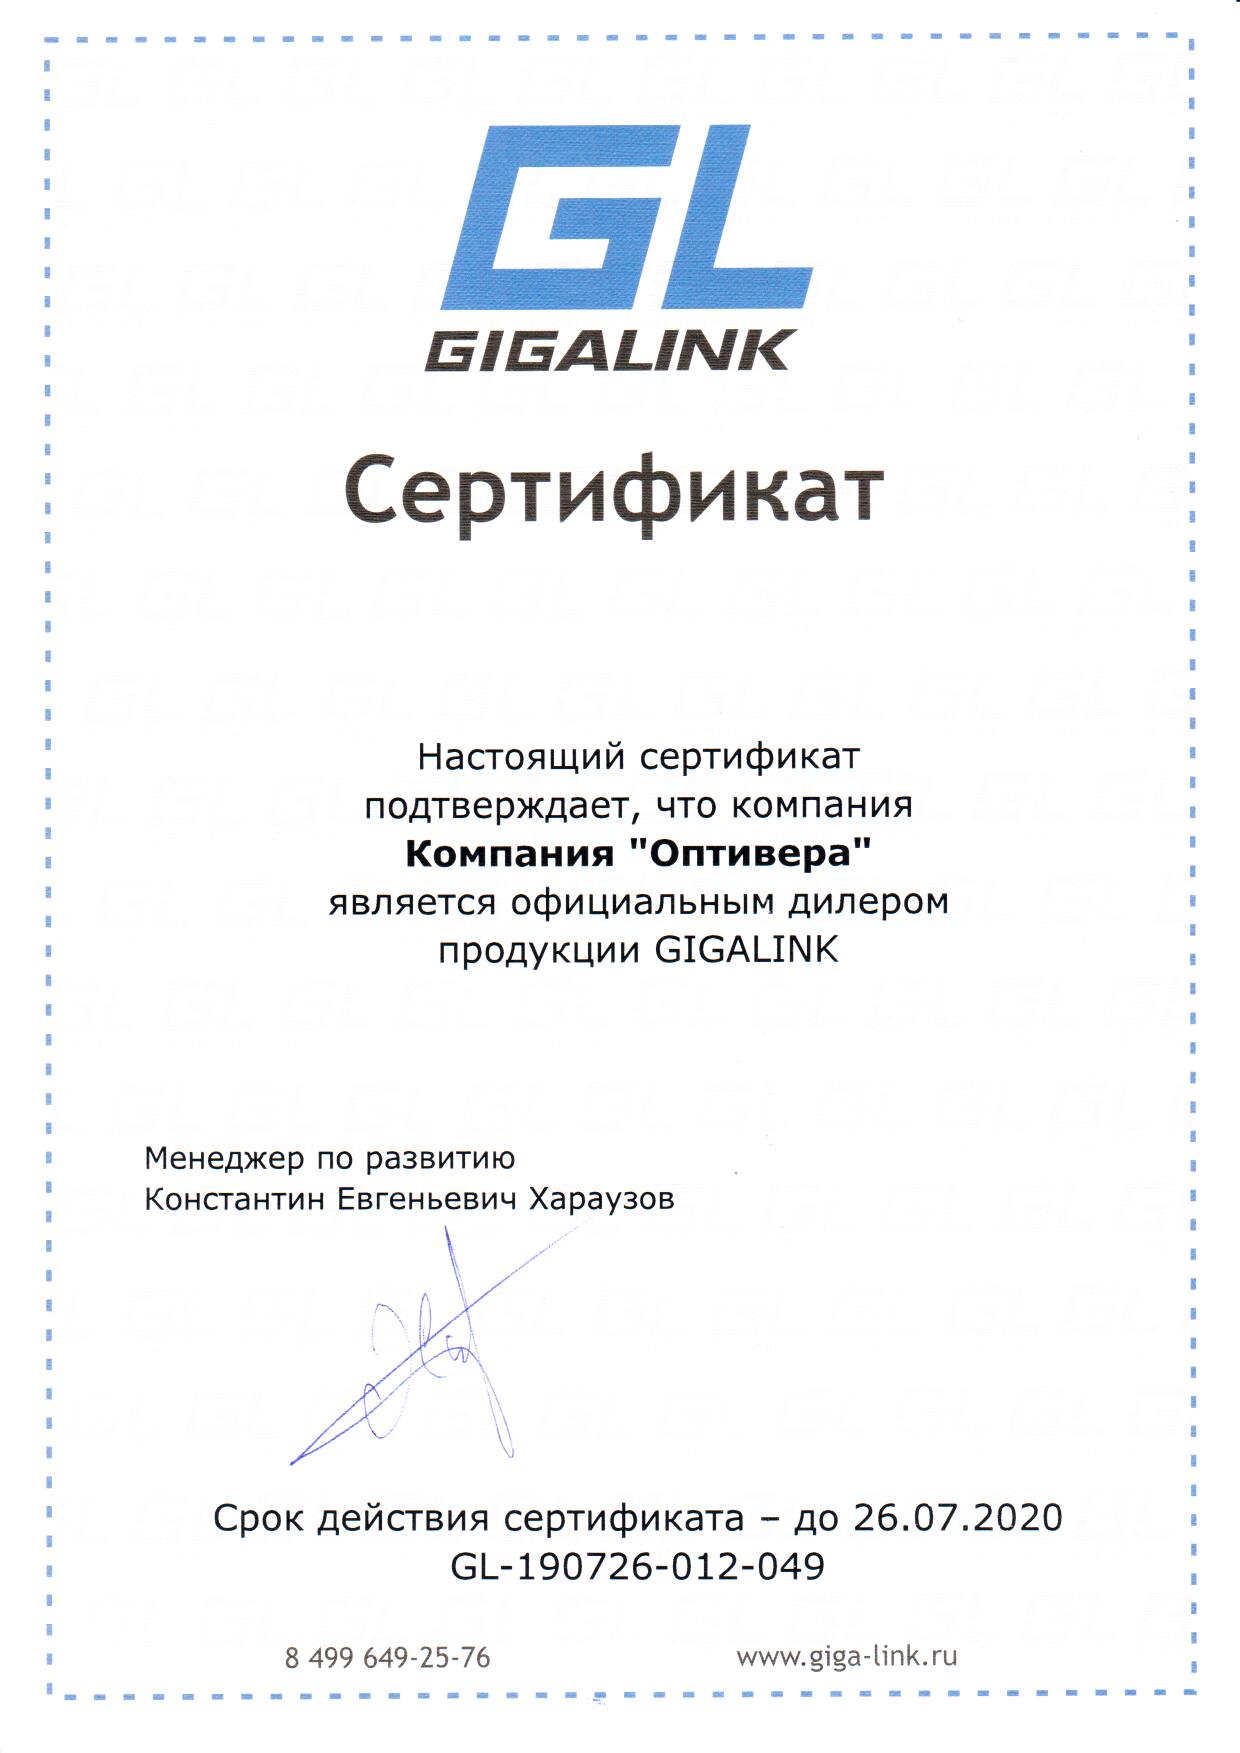 Компания Оптивера подтвердила статус официального дилера GIGALINK